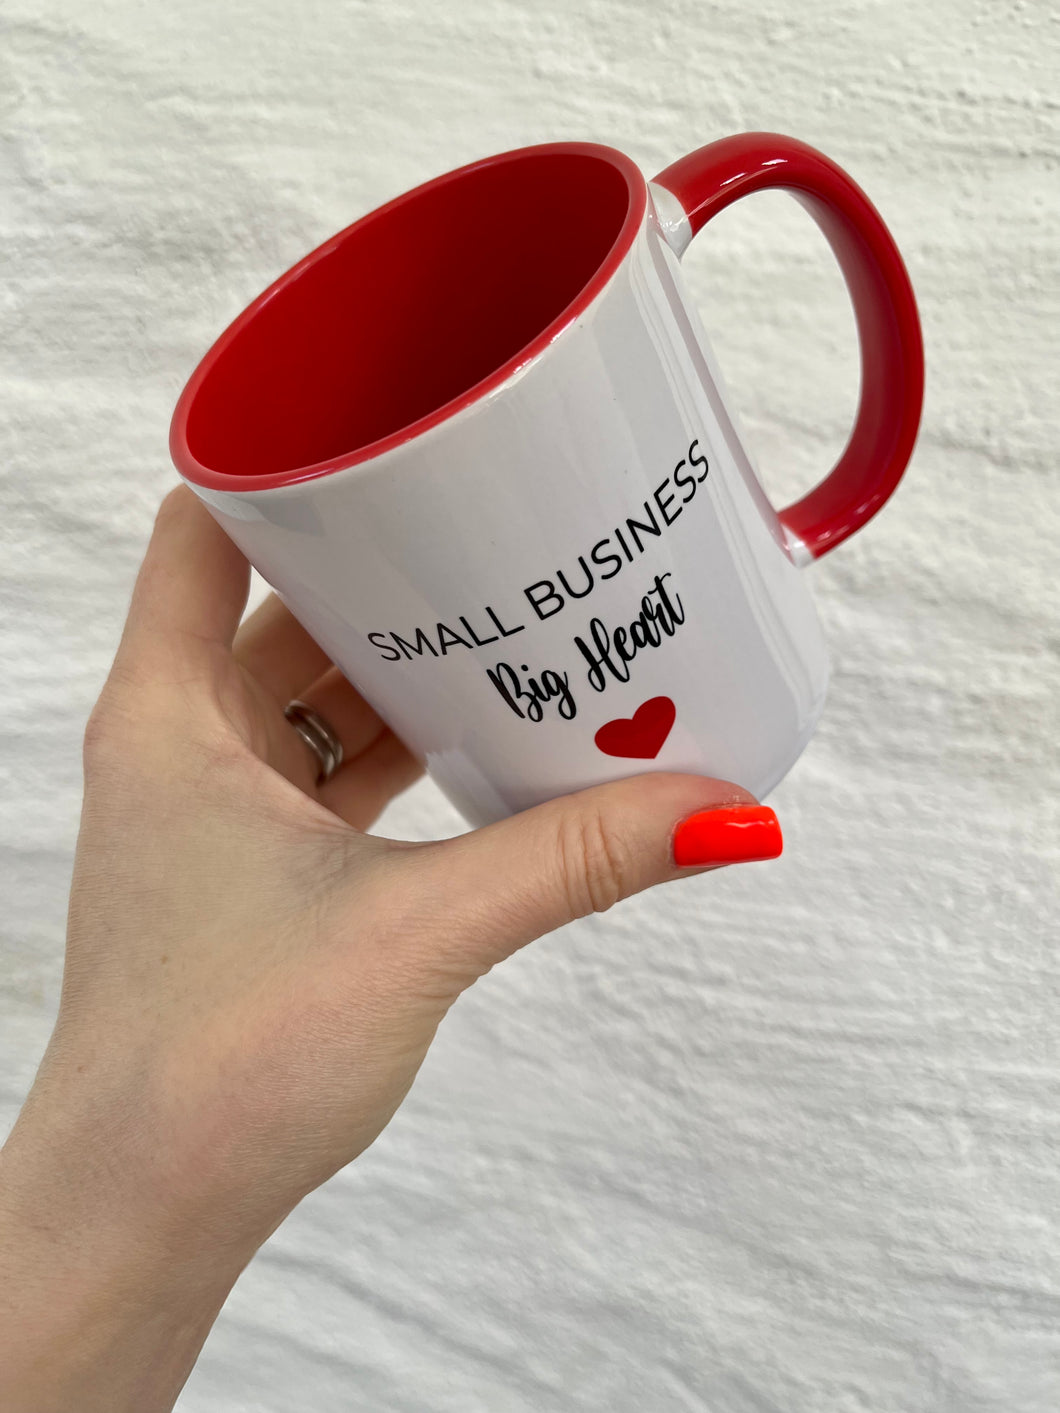 Small business Big heart ceramic mug